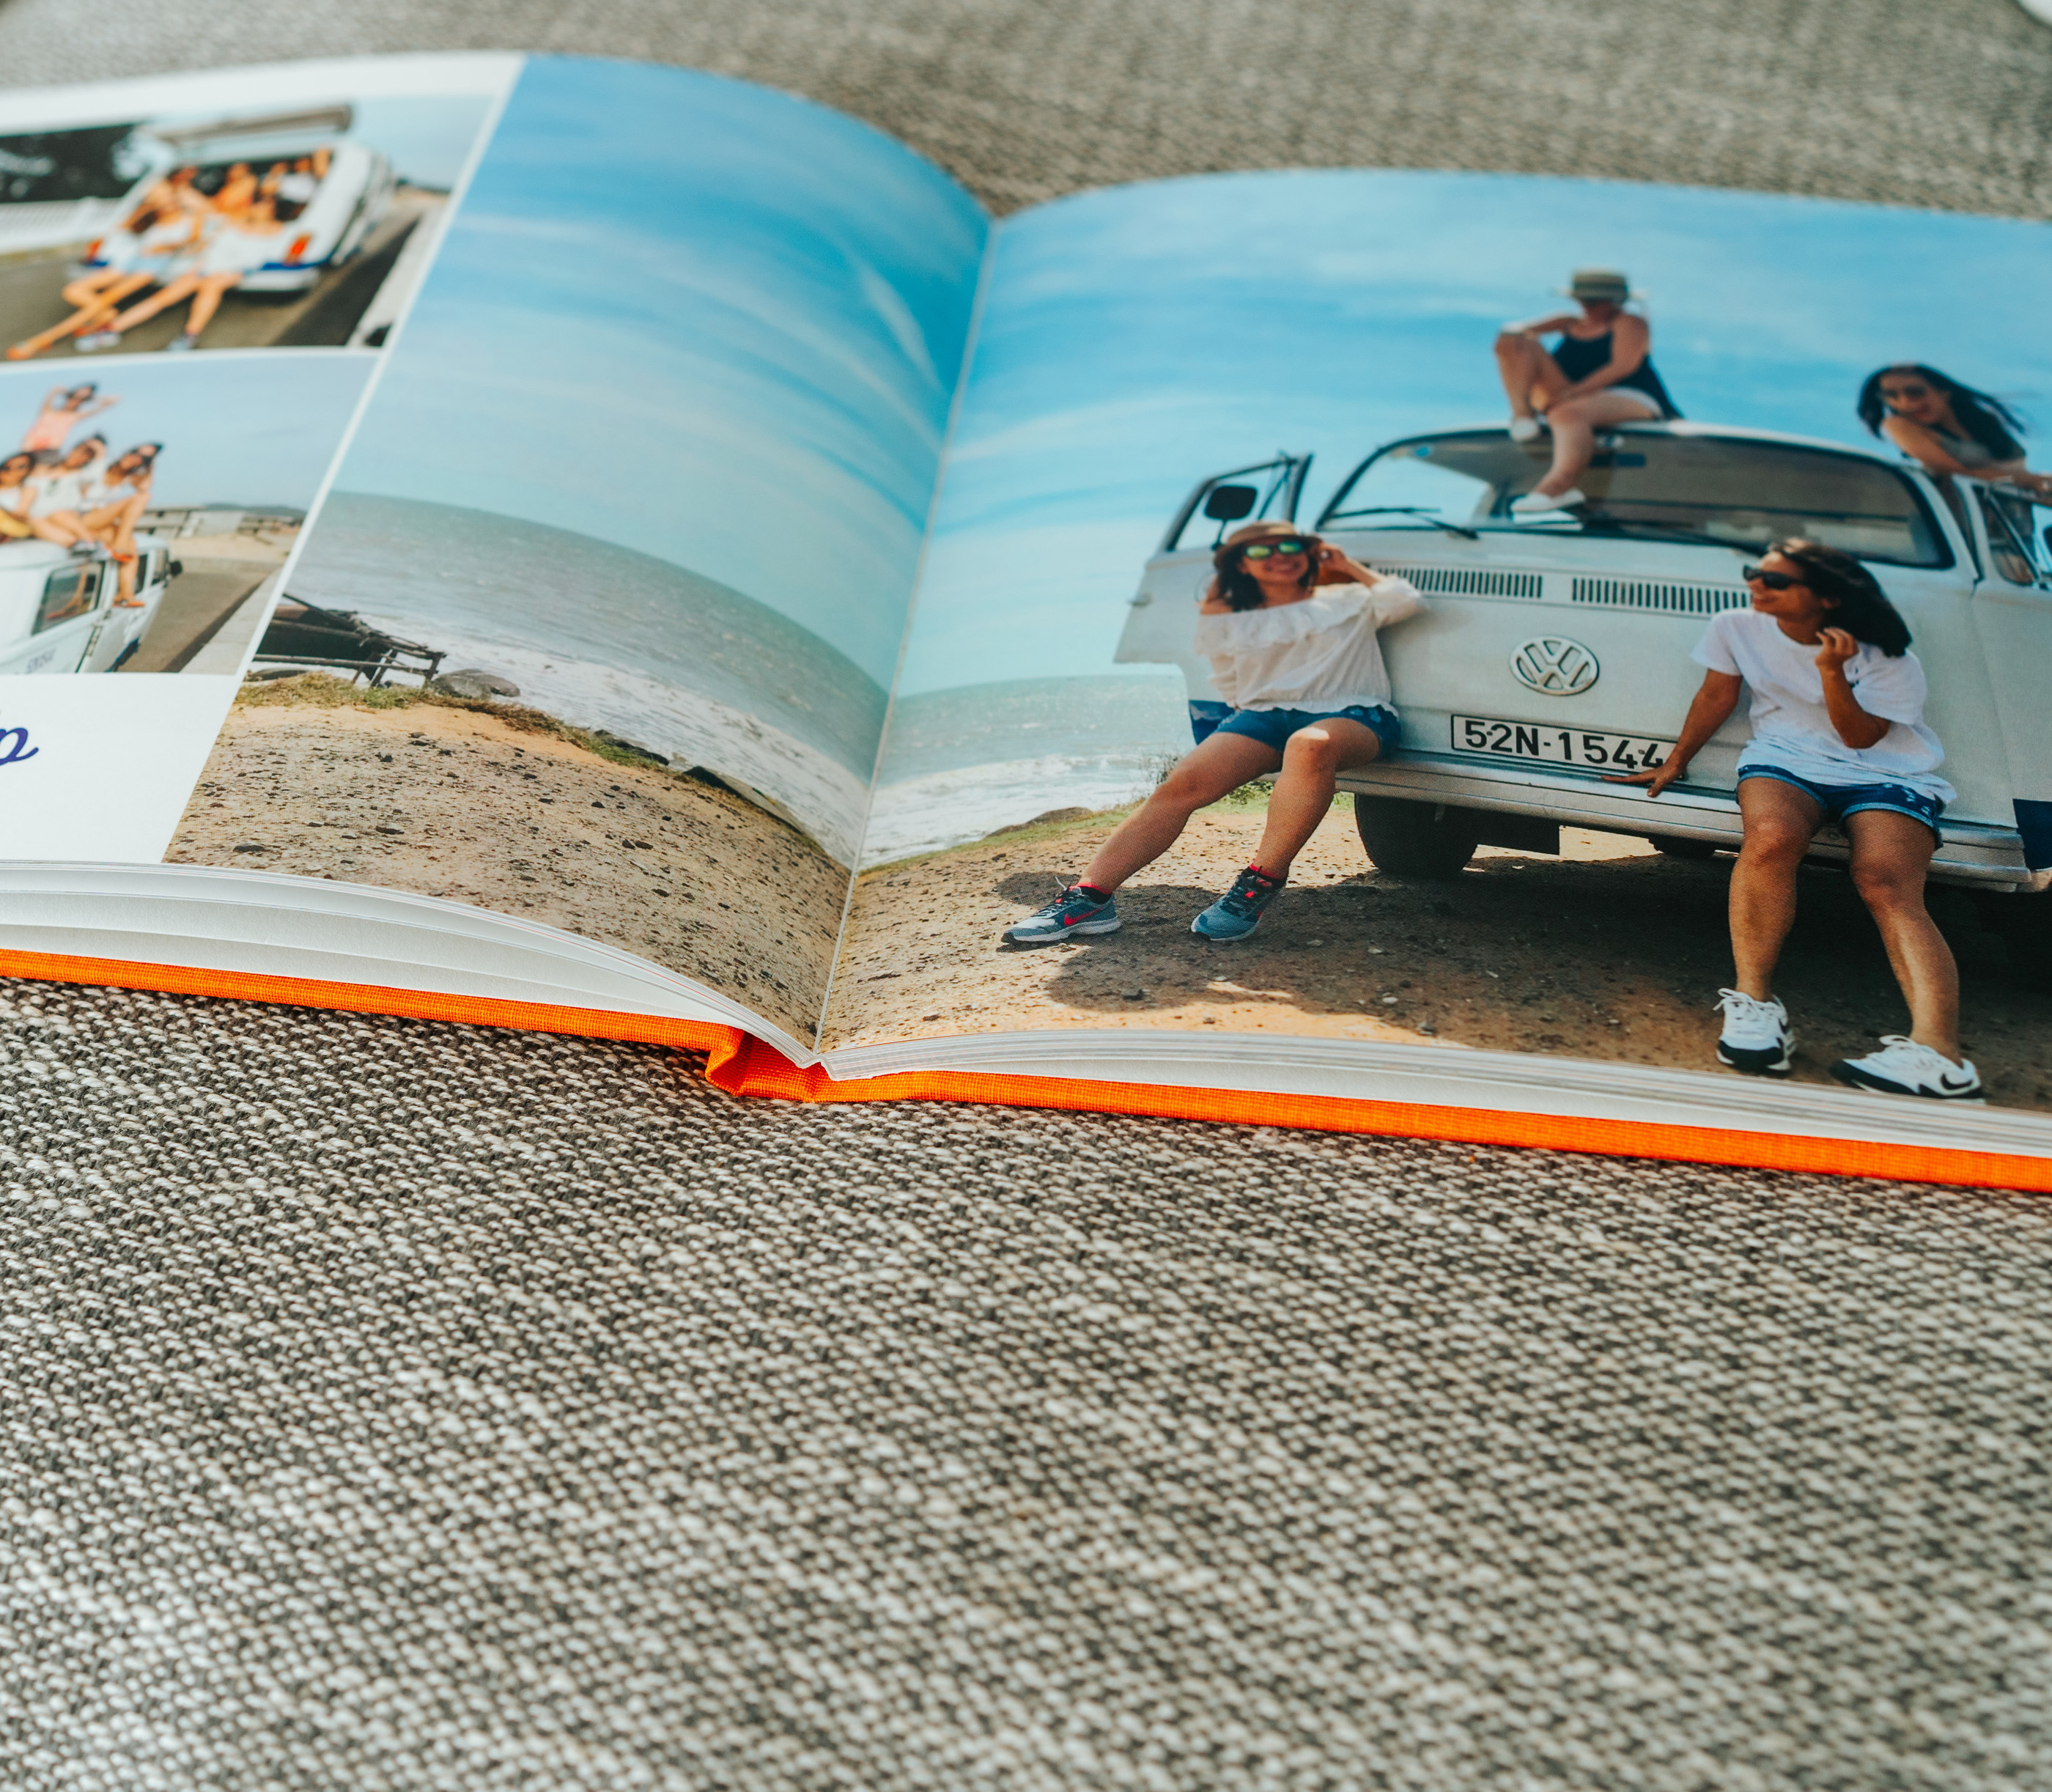 Fotobuch mit Urlaubsbildern